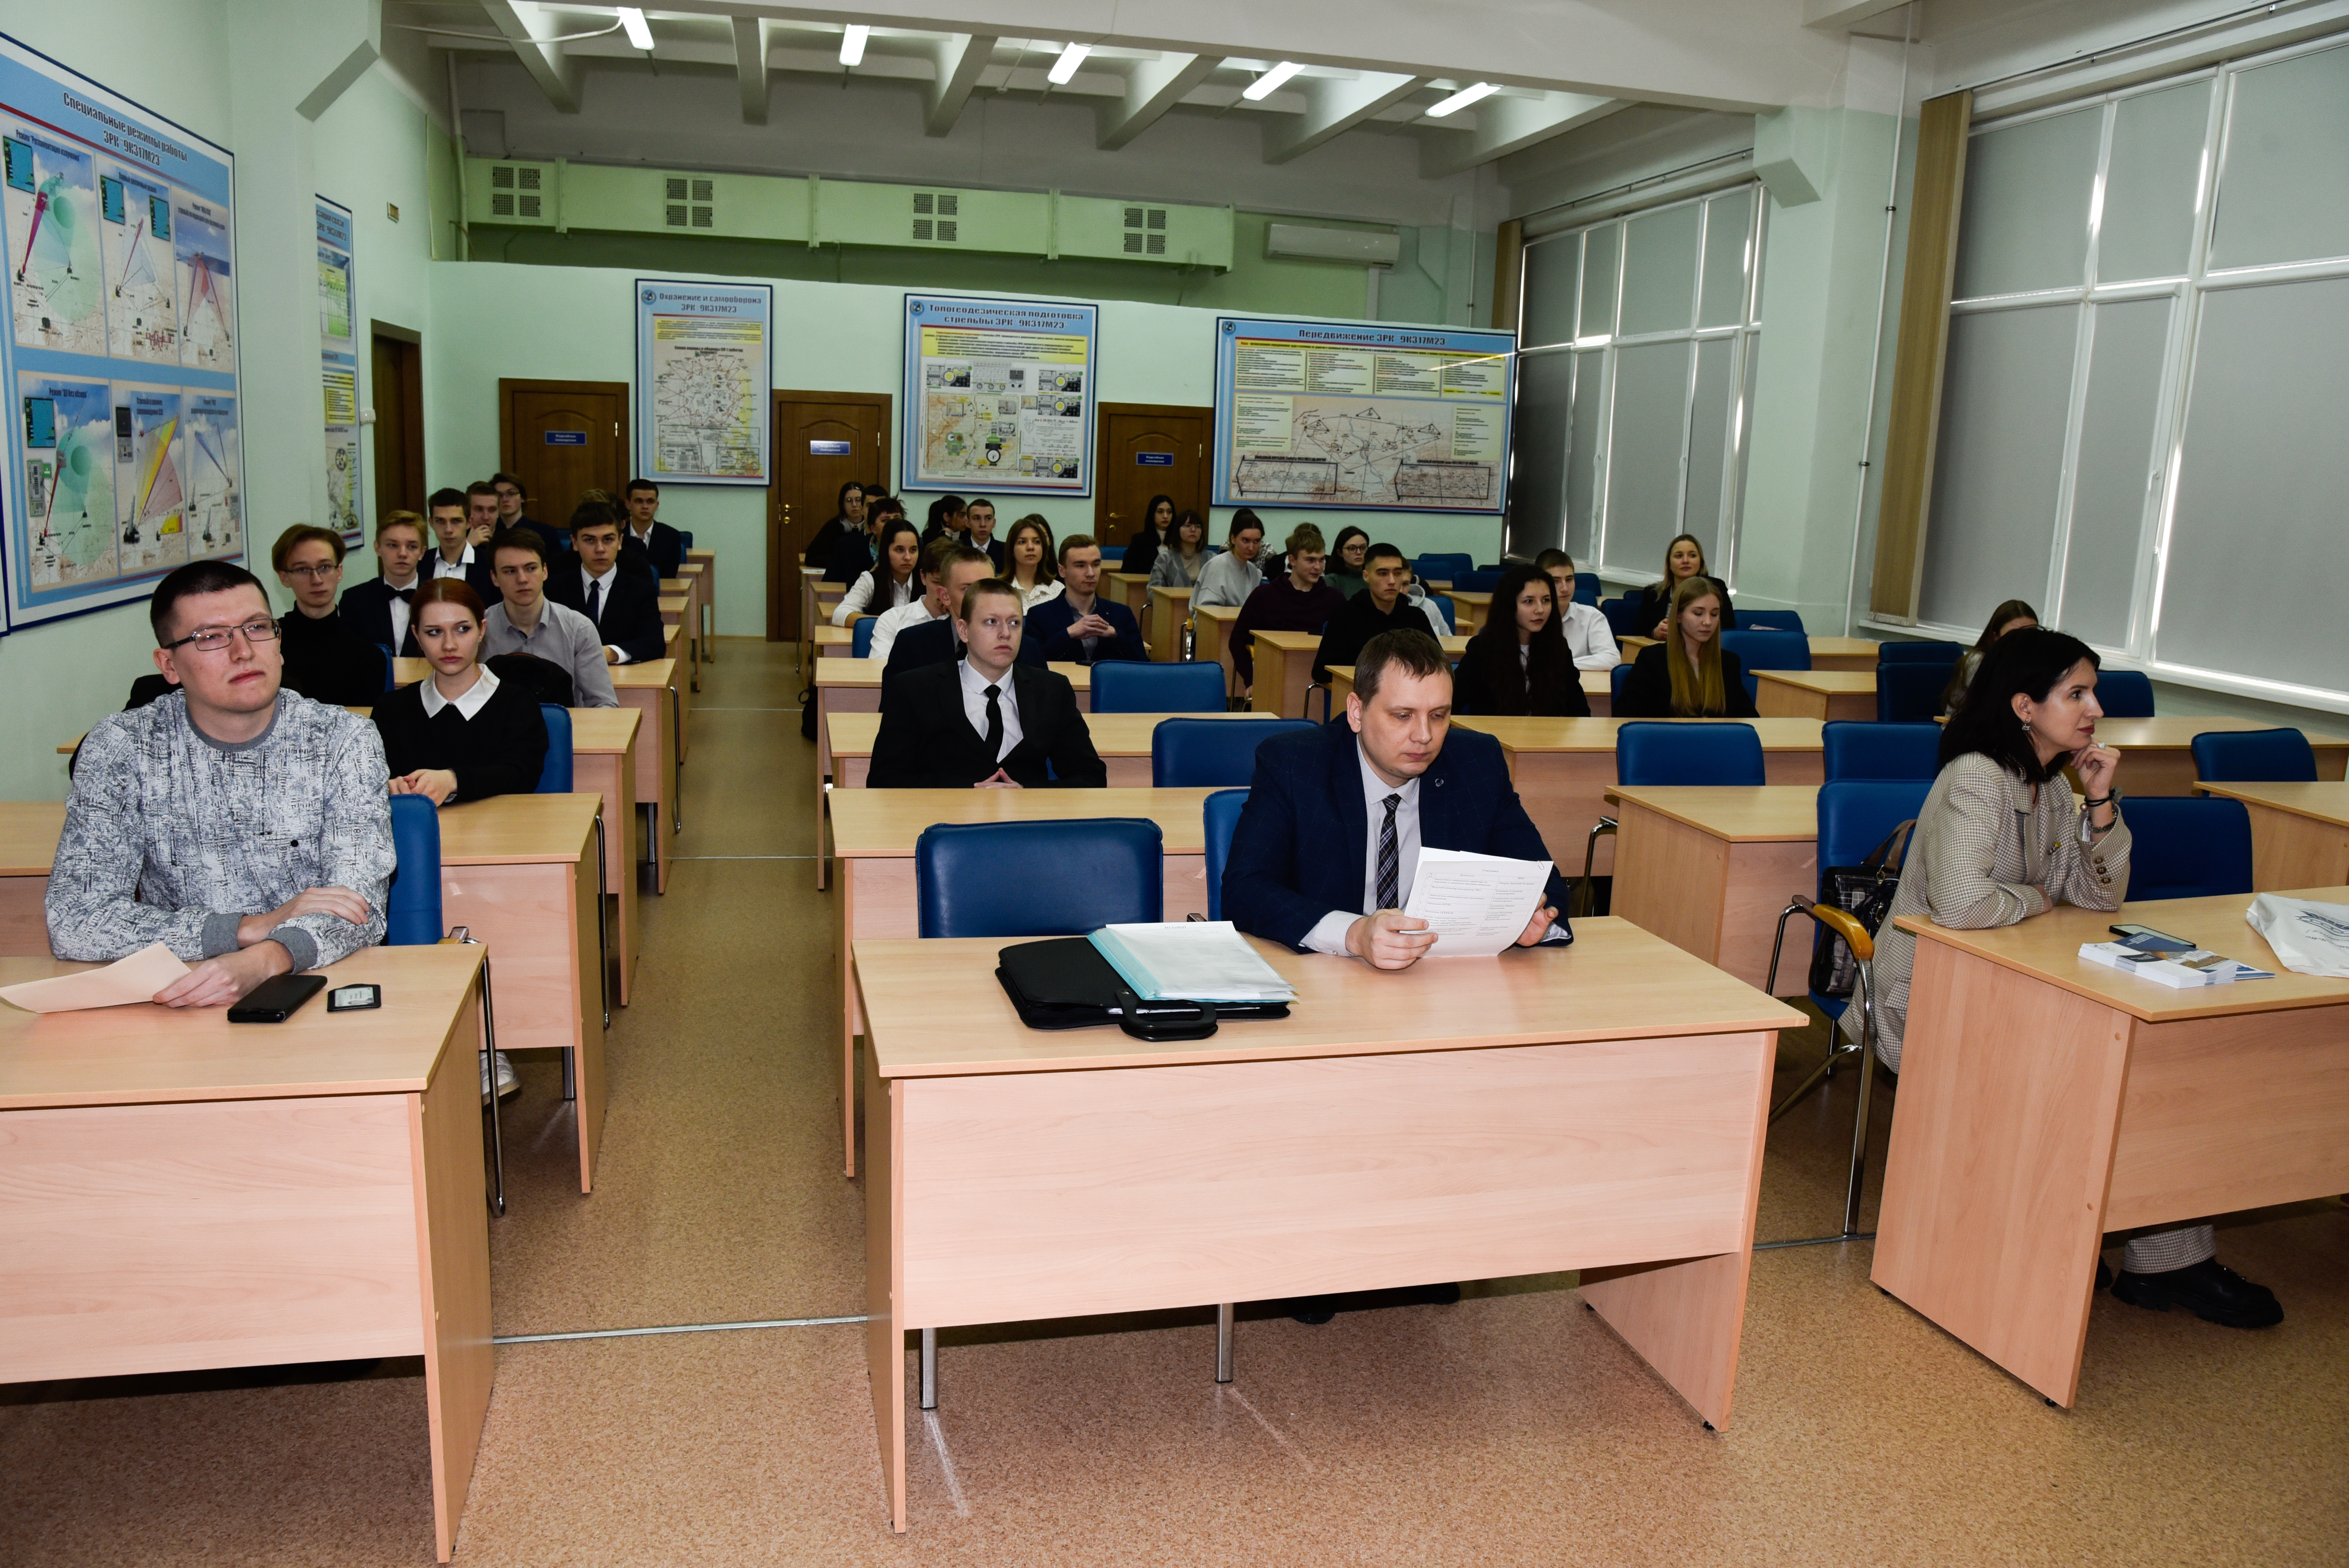 18 января состоялась встреча учащихся 10-11 классов Средней школы №78 и Средней школы №31 с сотрудниками УлГТУ и Ульяновского механического завода..